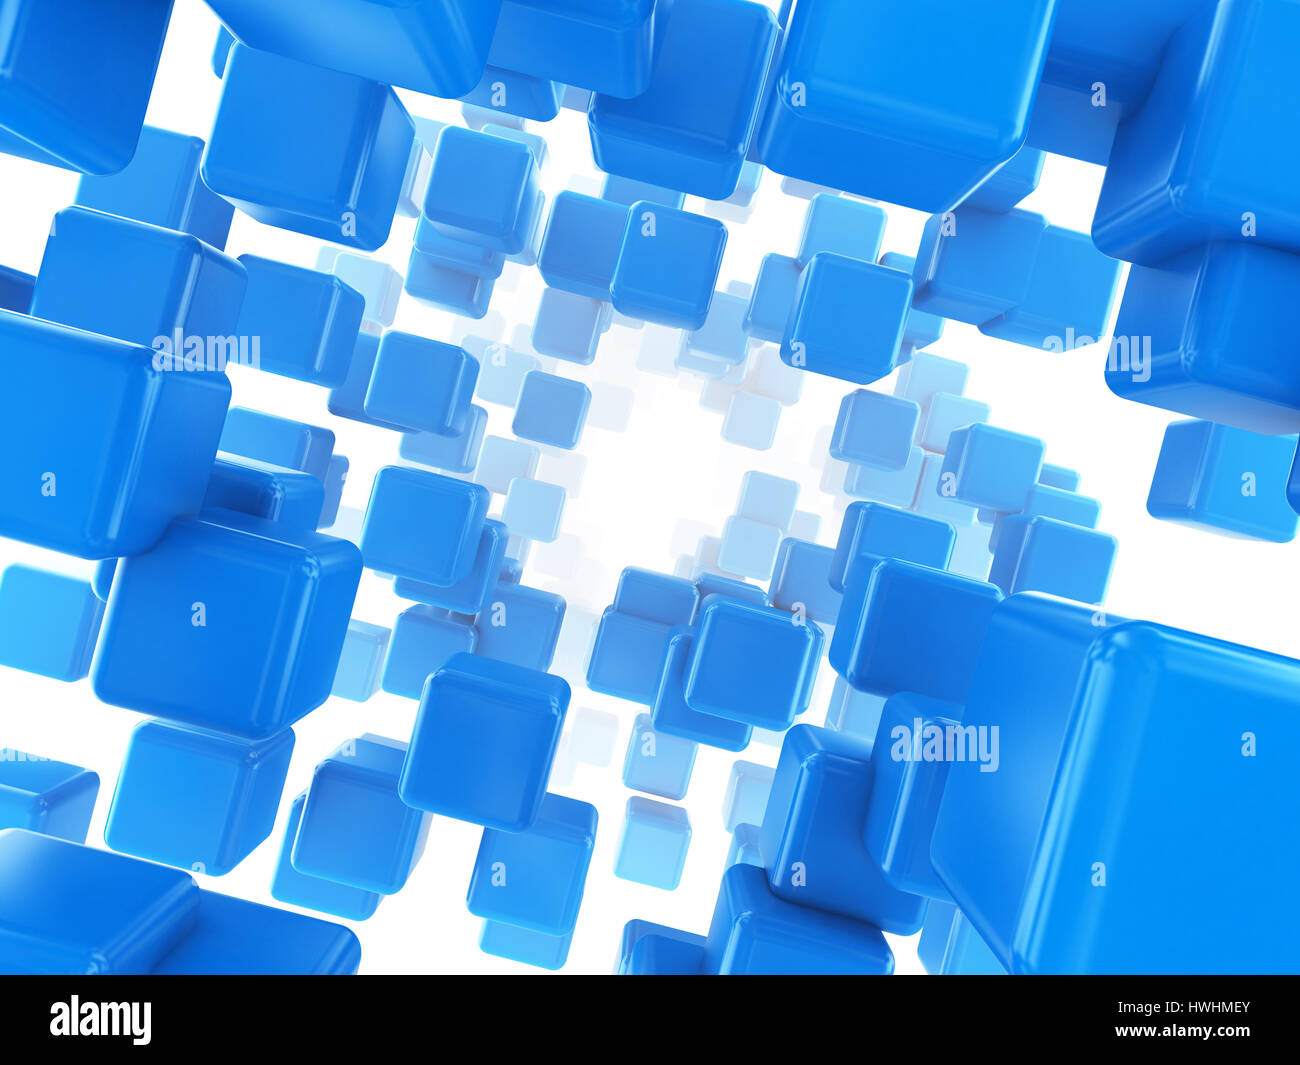 Hình nền khối hộp xanh la mã trừu tượng: Thanh lịch, tối giản và trừu tượng - đó chính là cảm giác mà hình nền khối hộp xanh la mã truyền tải. Khi nhìn vào hình ảnh, bạn sẽ được đắm mình trong không gian yên bình và cảm nhận được sự cân bằng giữa sự phức tạp và đơn giản.